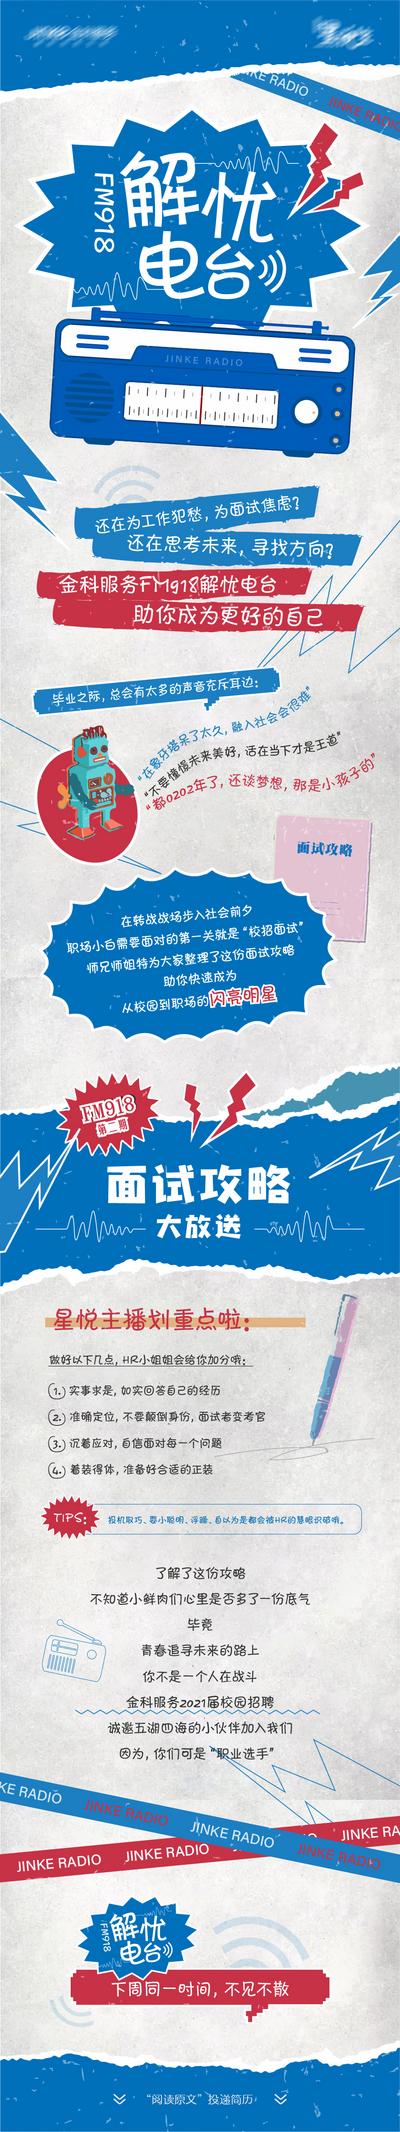 【南门网】海报 长图 面试 招聘 电台 童年 复古风 攻略